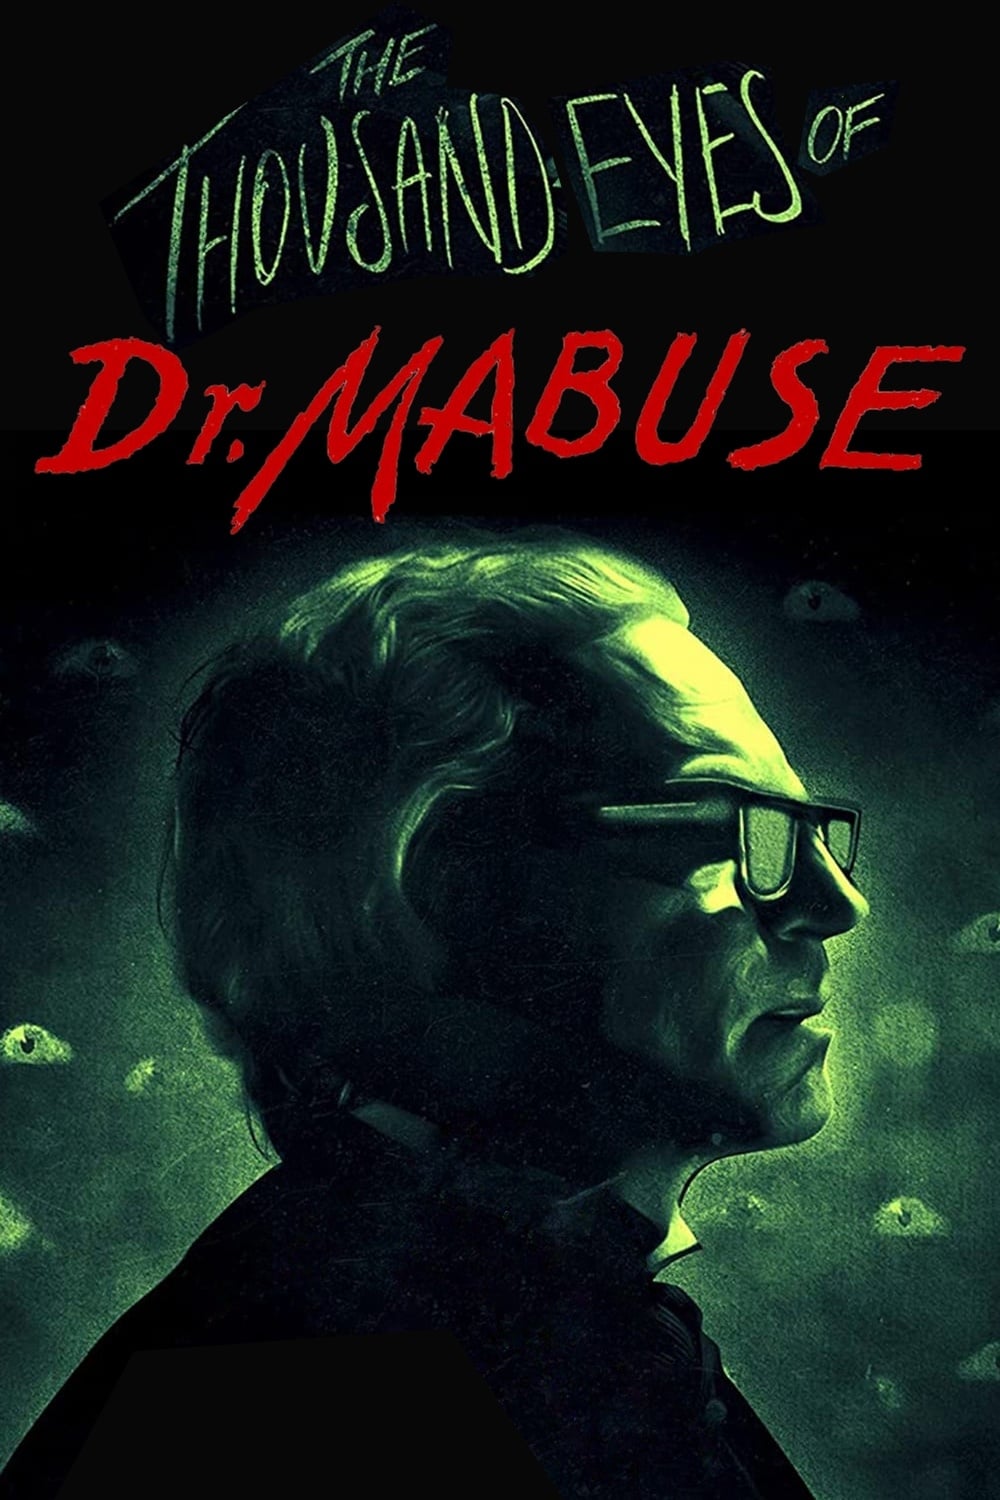 Le Diabolique Docteur Mabuse (1960)